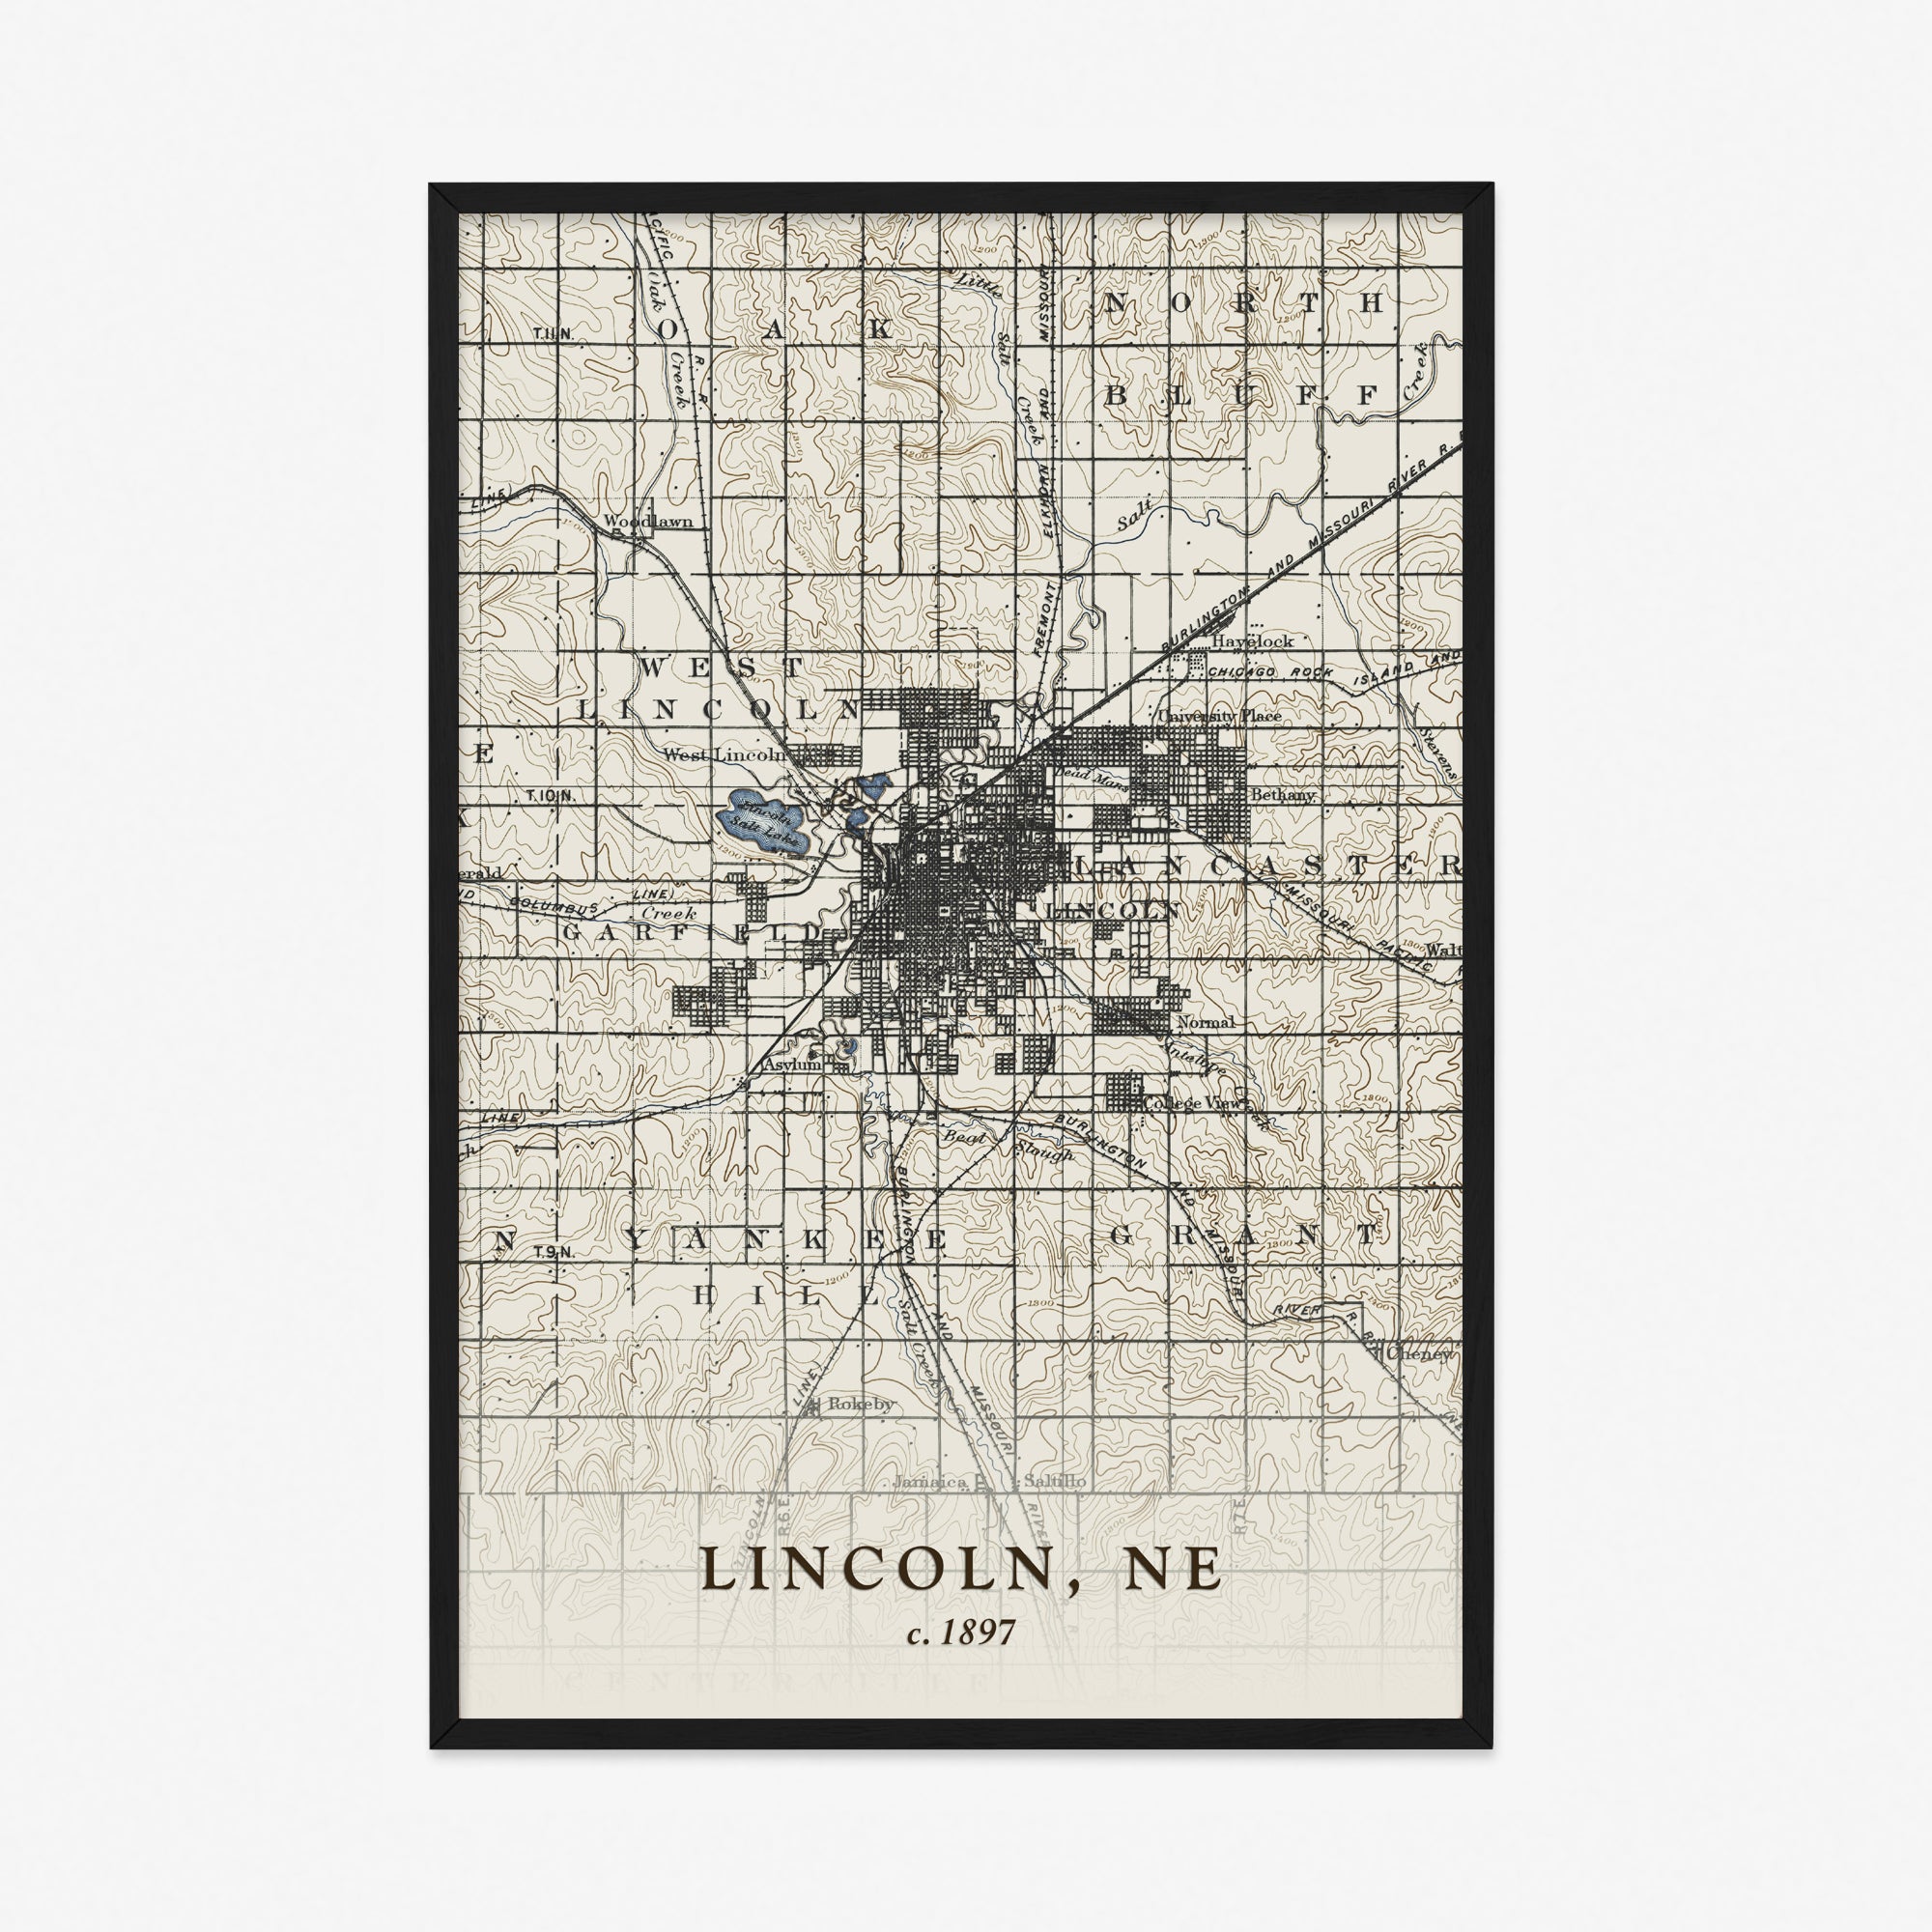 Lincoln, NE - 1897 Topographic Map